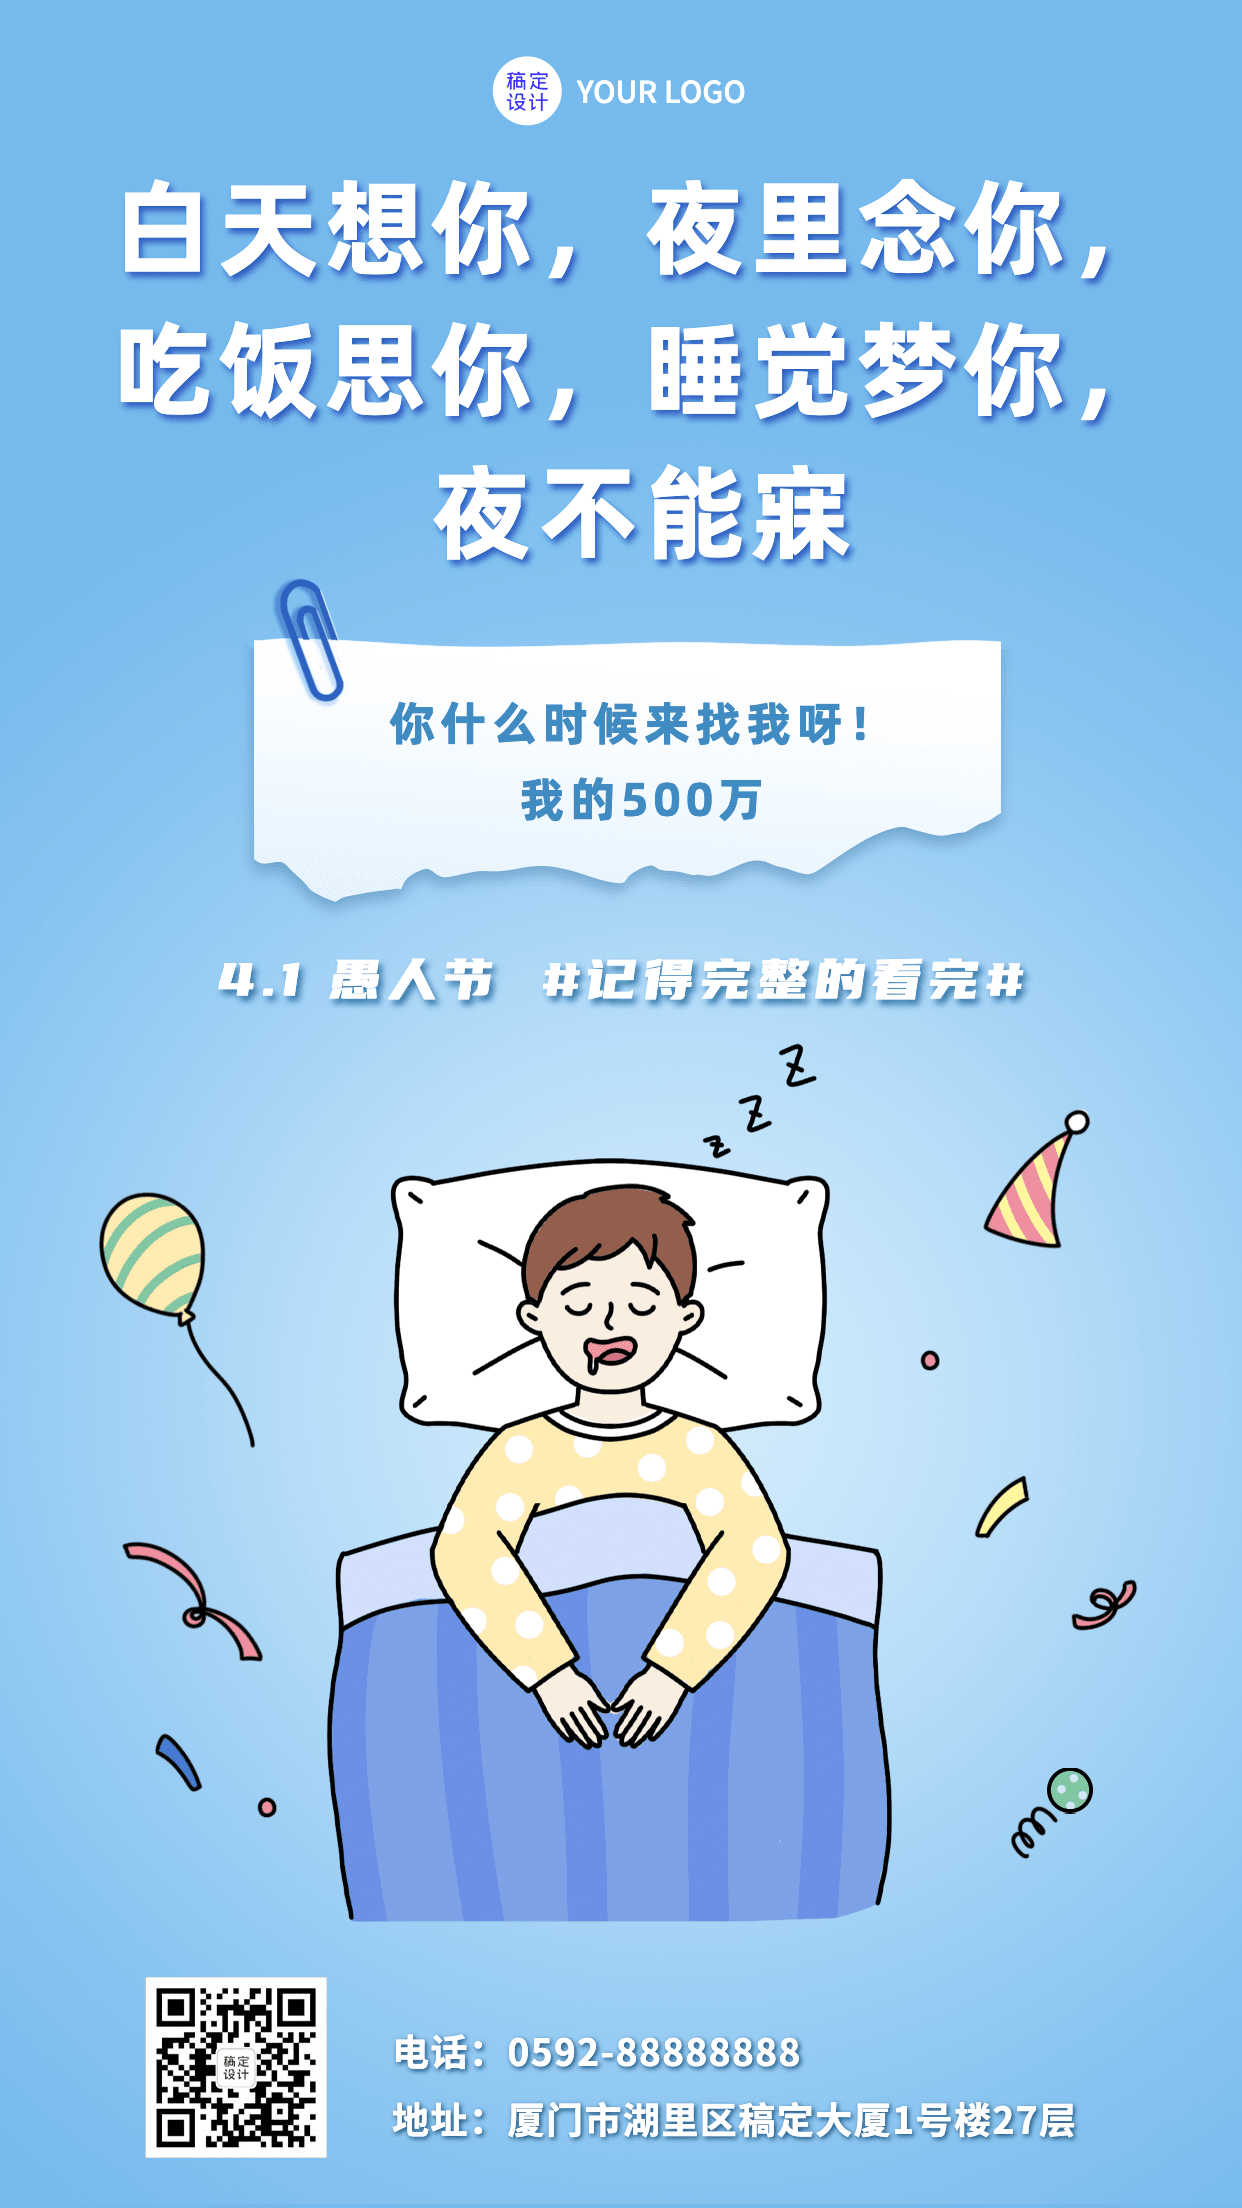 4.1愚人节节日祝福系列手机海报预览效果